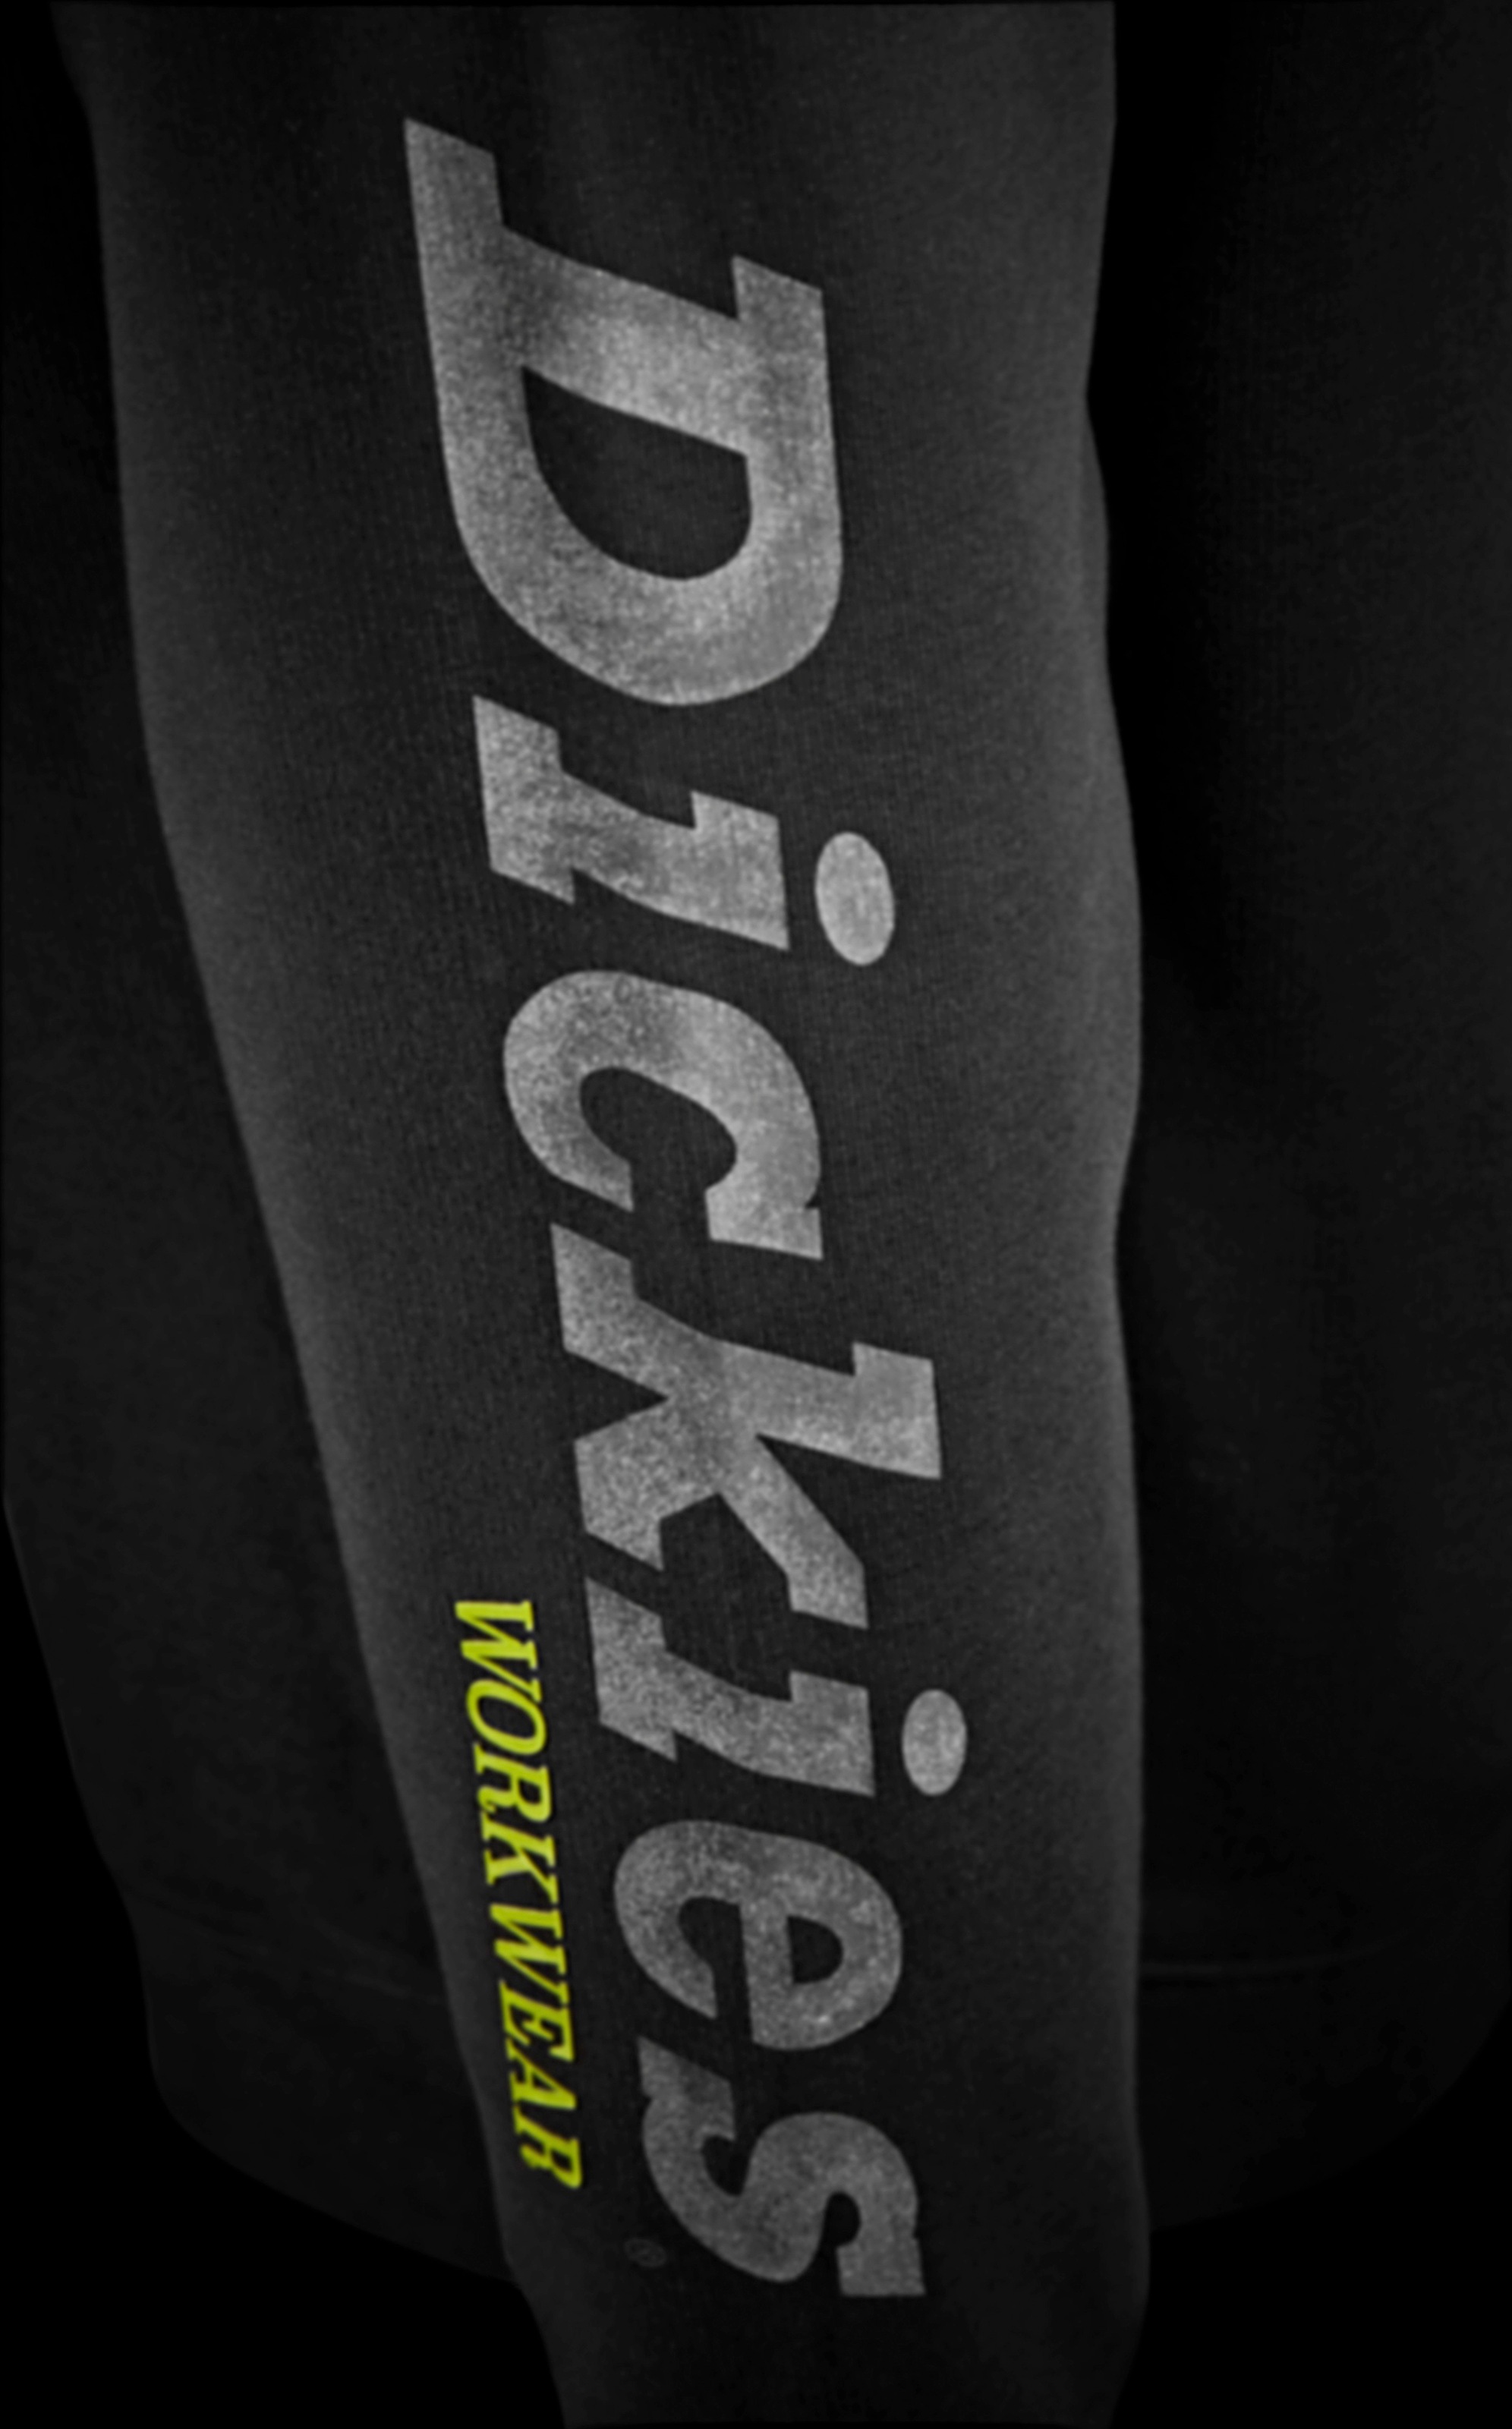 Dickies Sweatshirt »Okemo-Graphic«